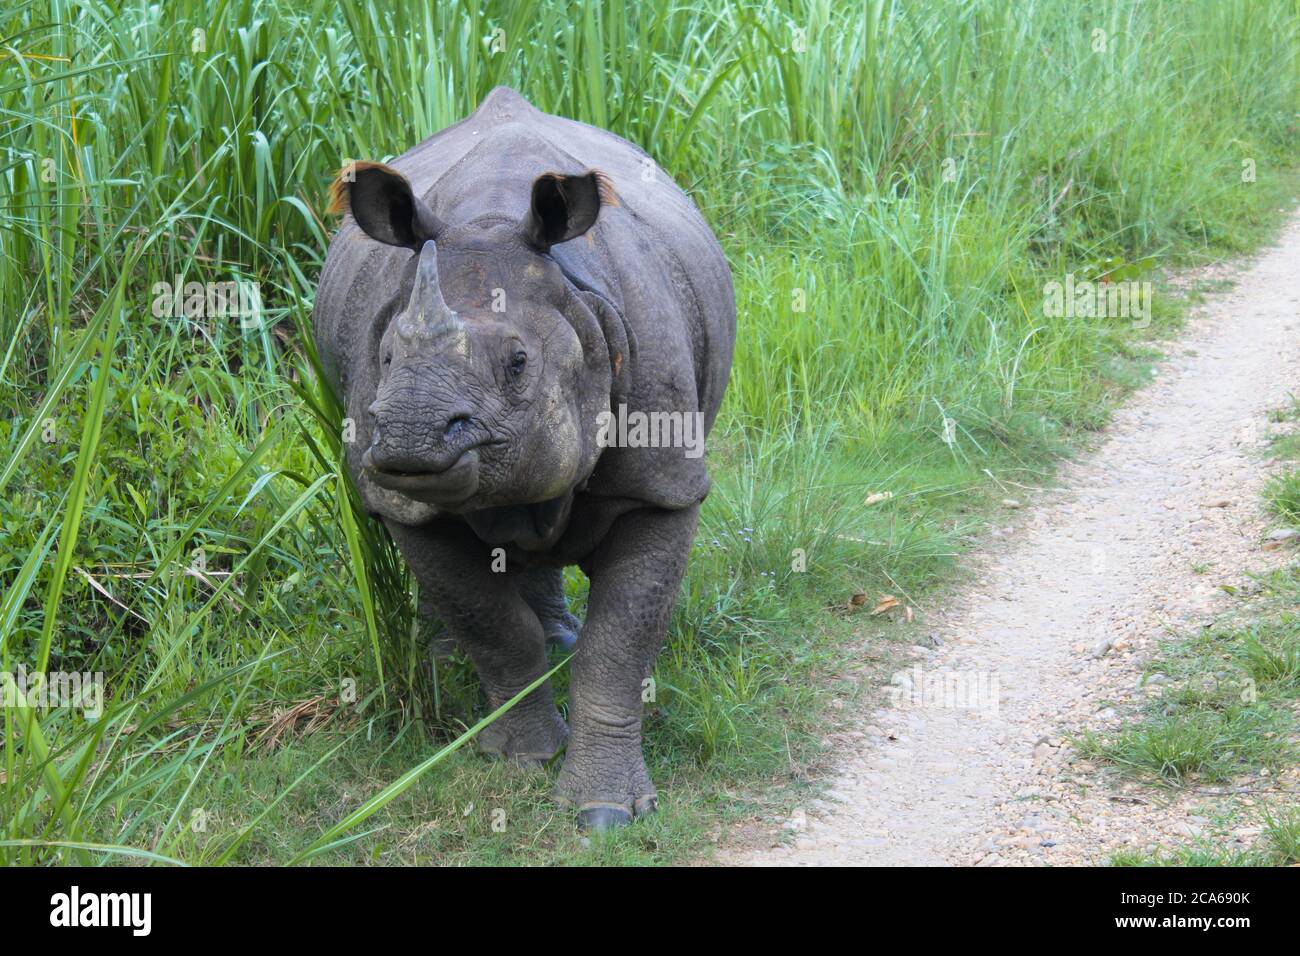 Rhinocéros gris indien aux oreilles moelleuses mangeant de l'herbe dans un parc national au Népal Banque D'Images